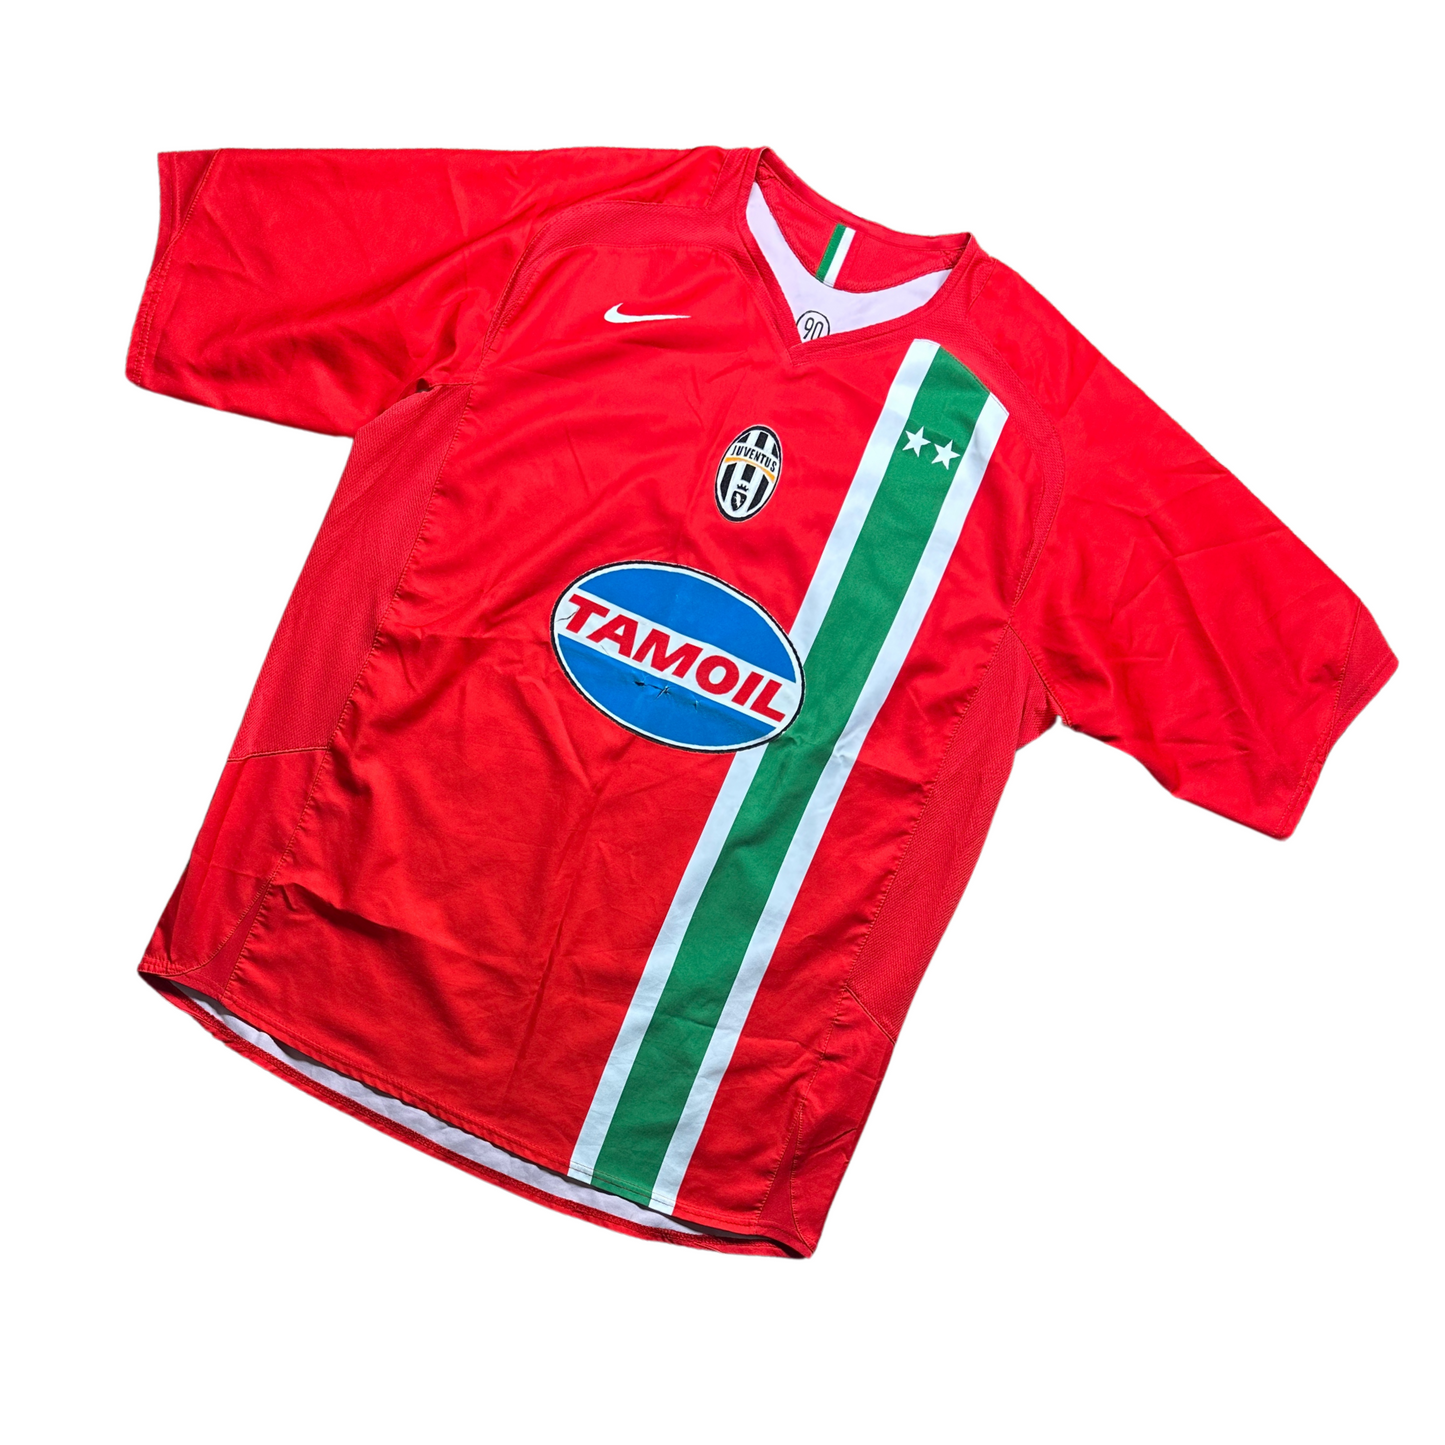 Juventus 2005/2006 Away Football Shirt